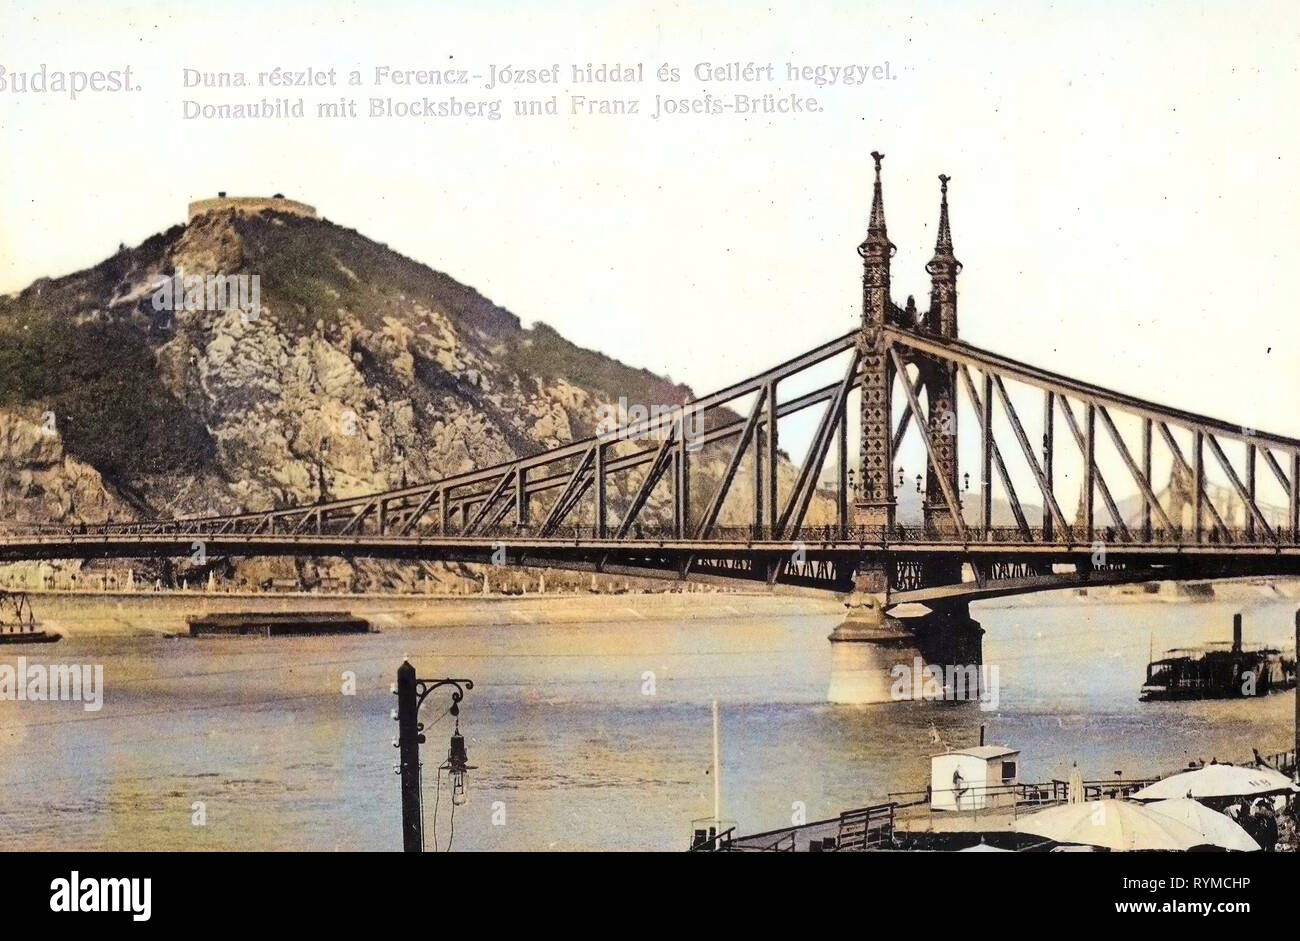 Images historiques du pont de la liberté, à Budapest, des photographies historiques de la colline de Gellért, 1906, Donau mit Blocksberg und Josefsbrücke, Hongrie Banque D'Images